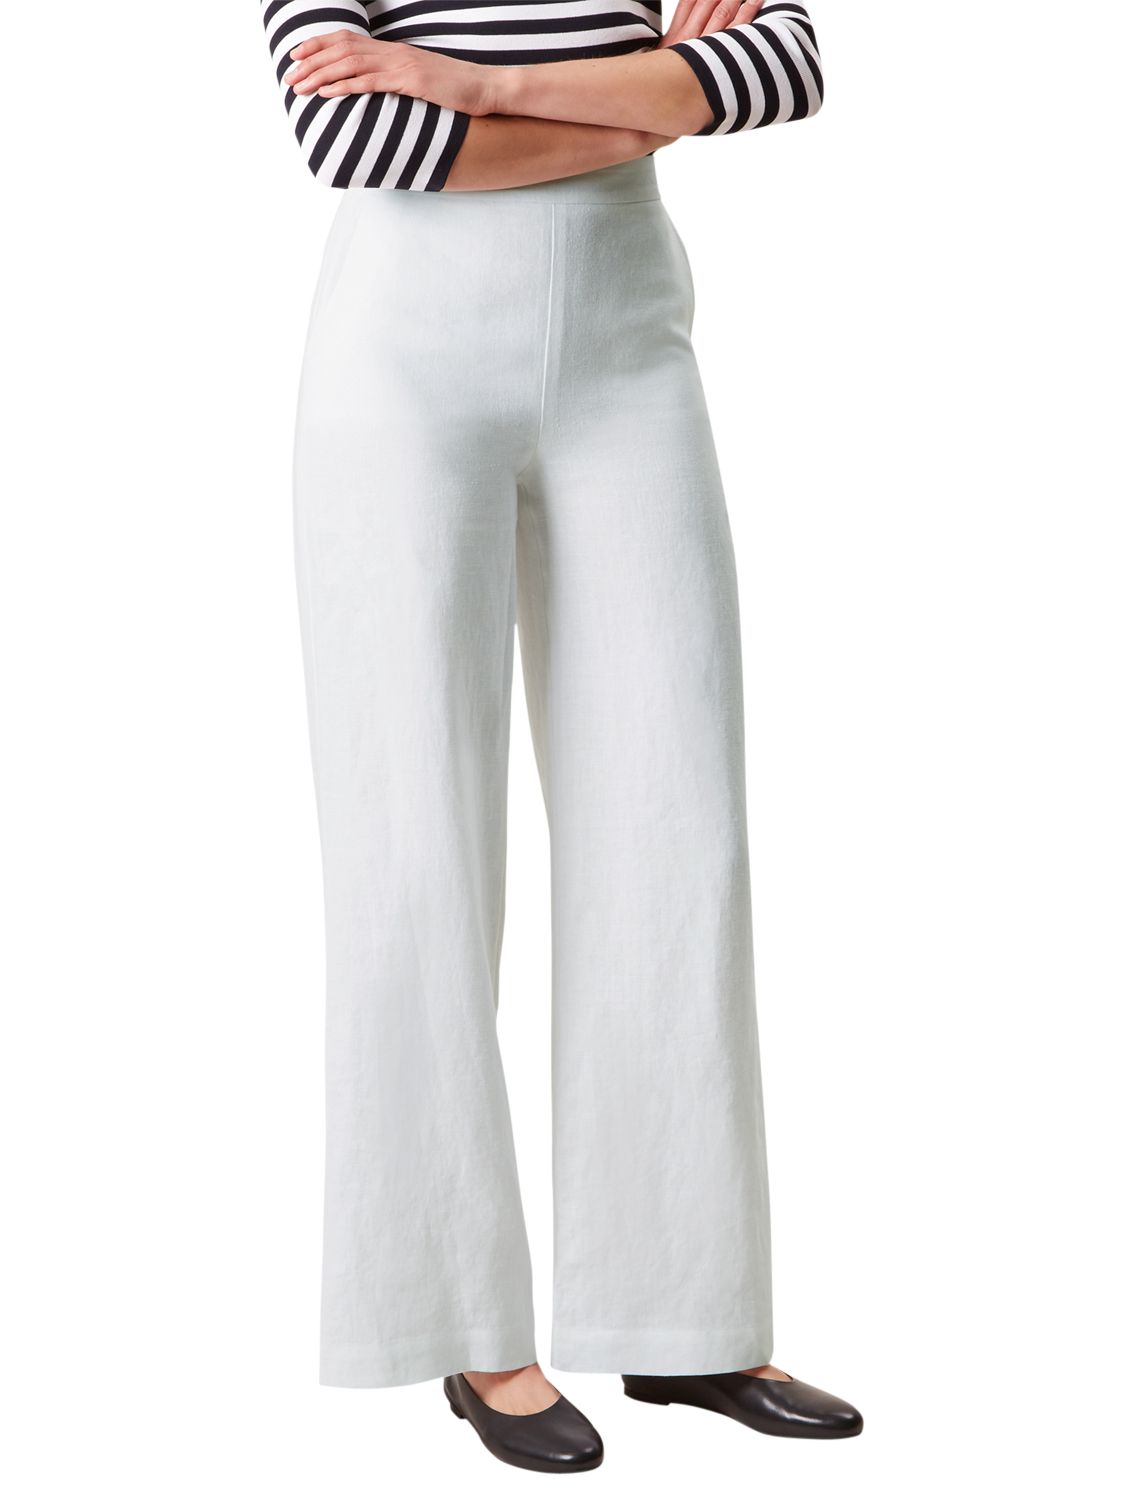 Hobbs Anise Linen Trousers, White, 6